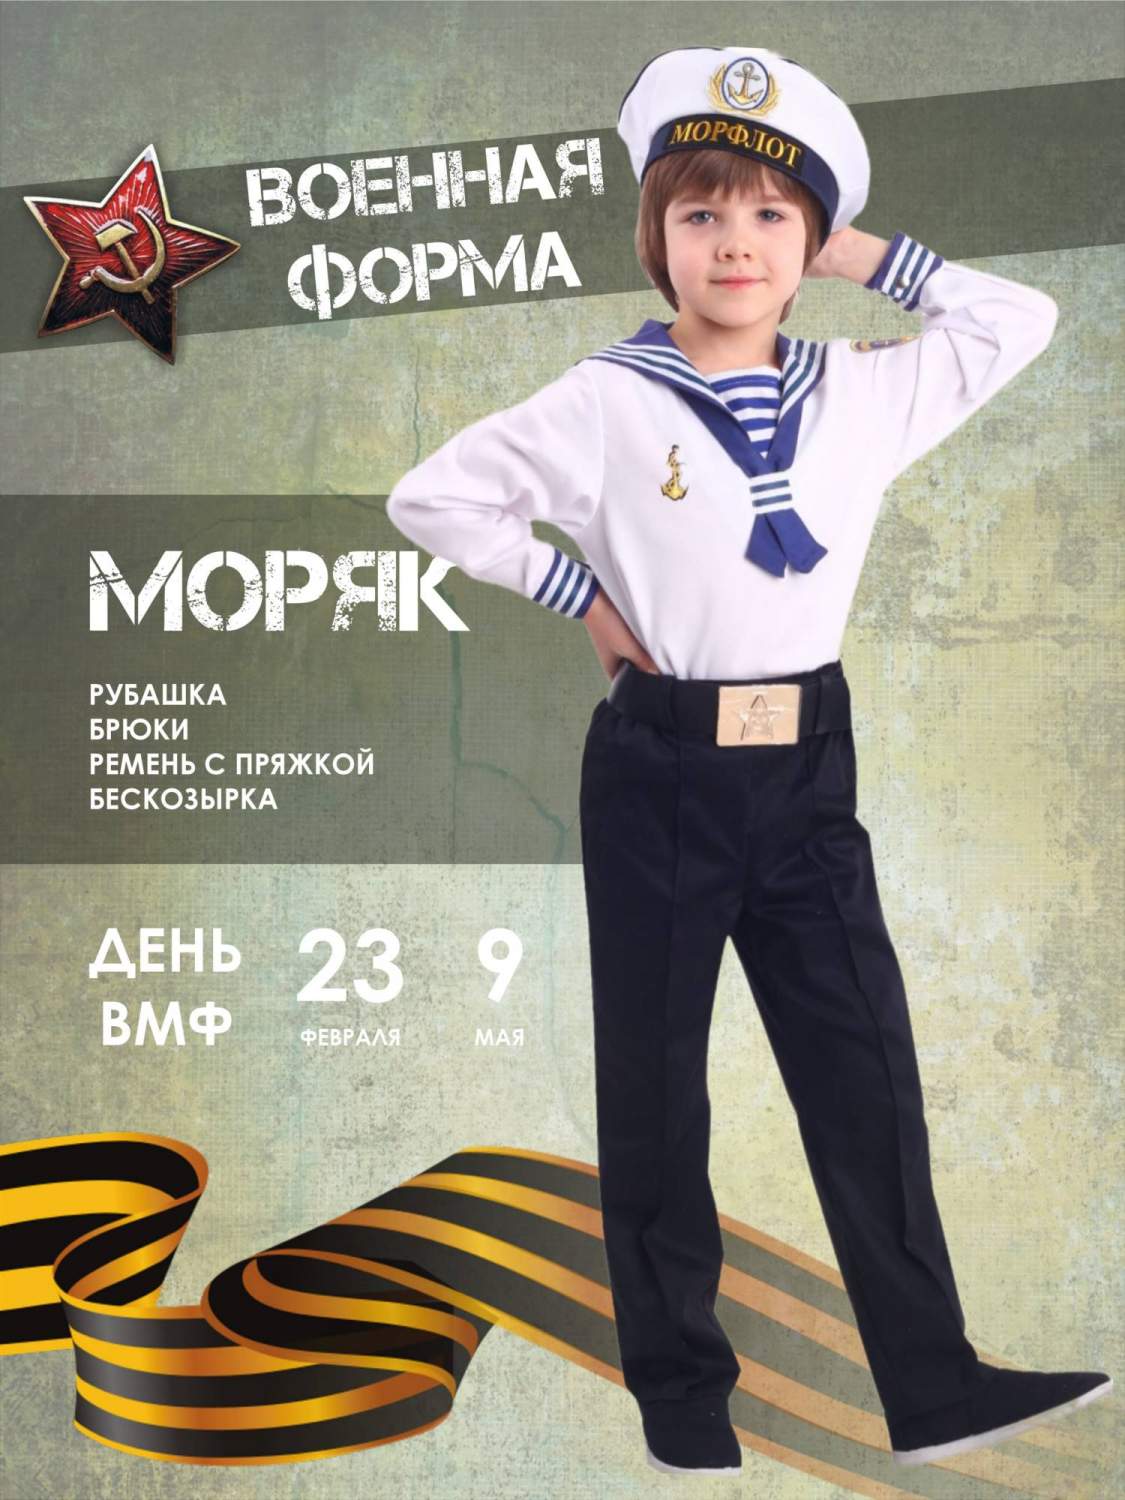 Детский костюм моряка - купить в интернет магазине Winter Story internat-mednogorsk.ru